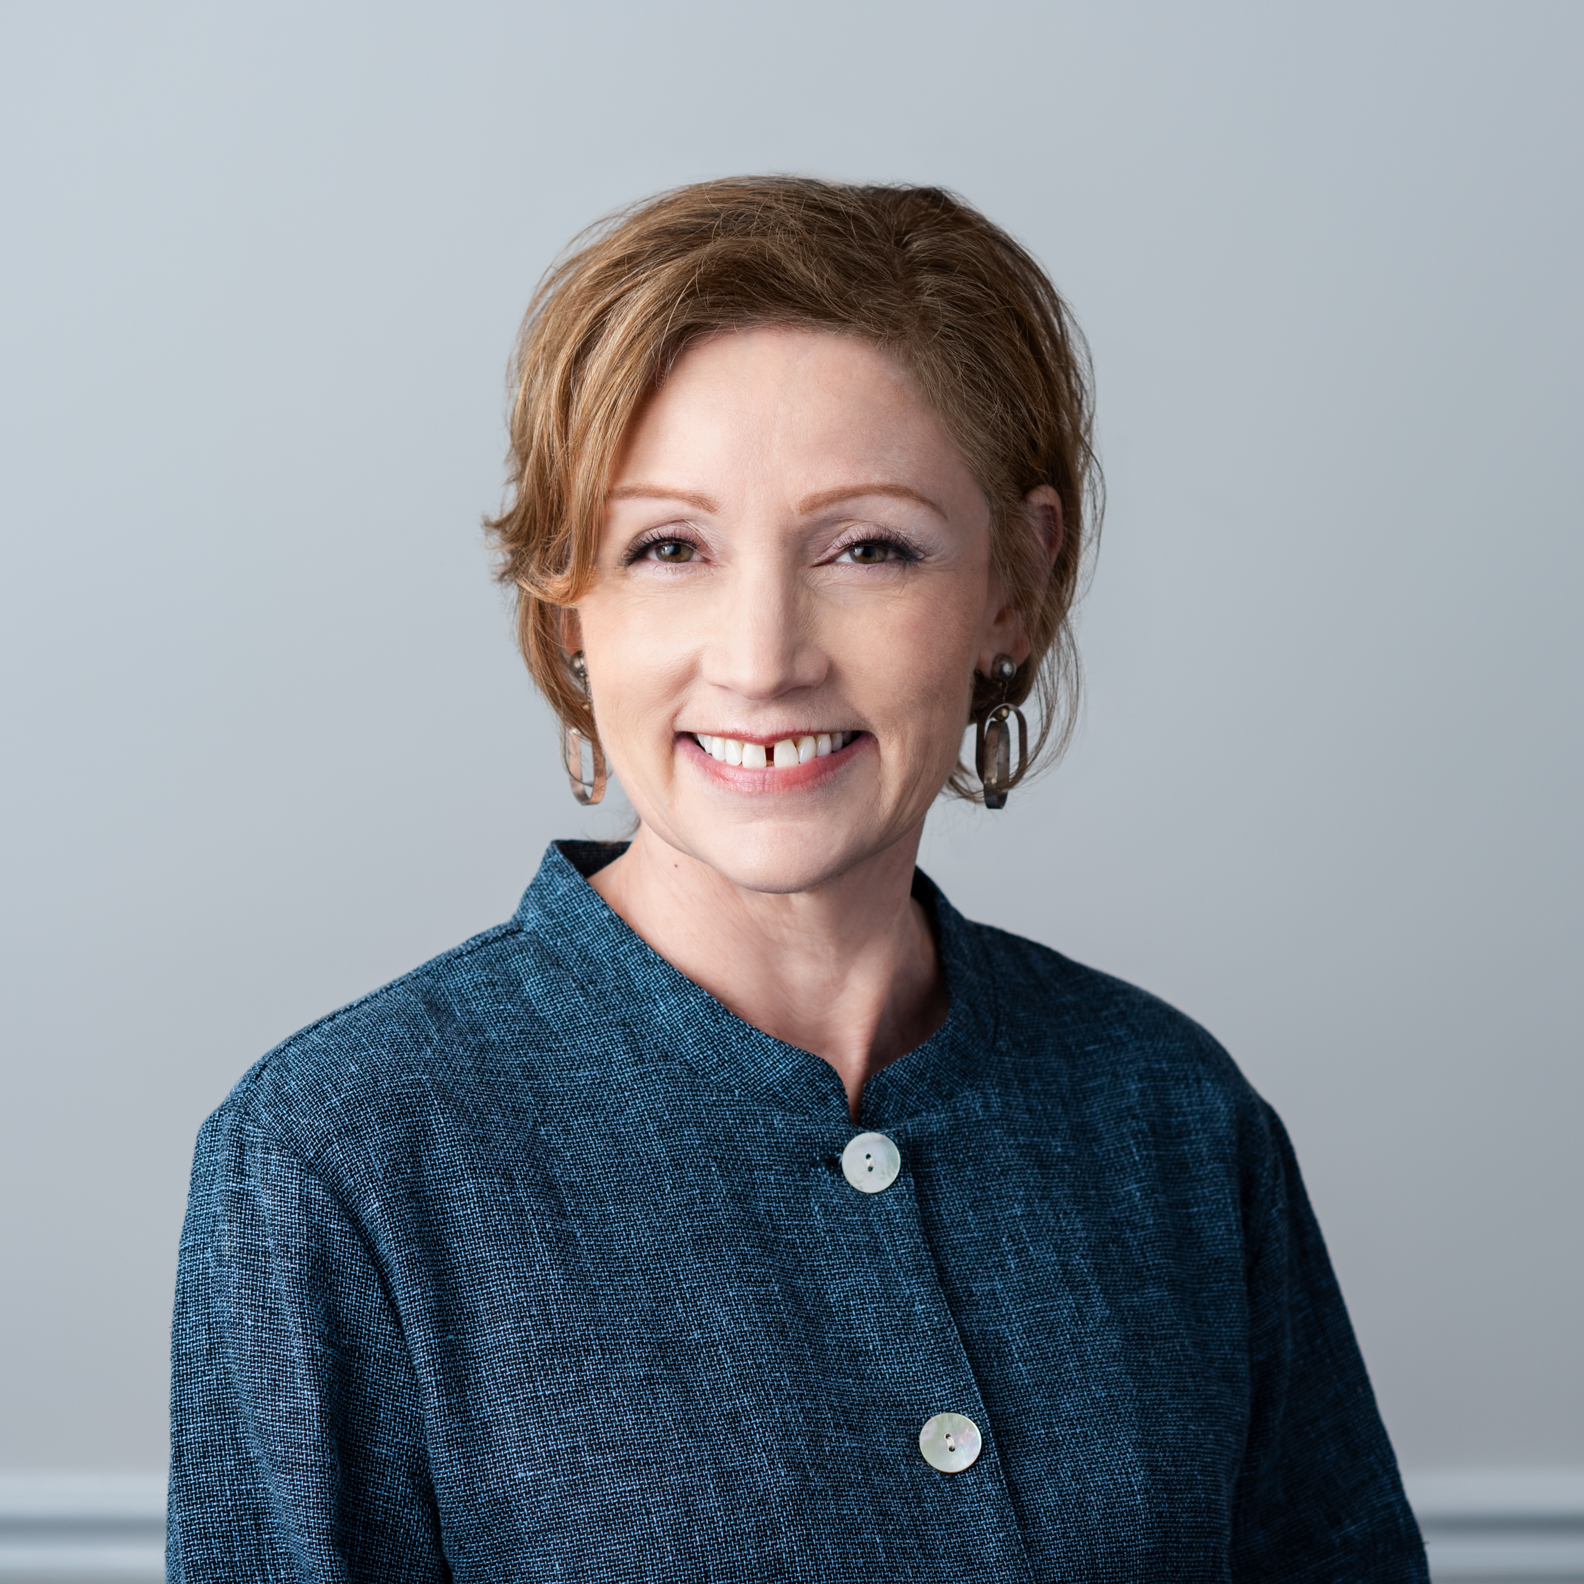 Karen Vassar, Owner and Director